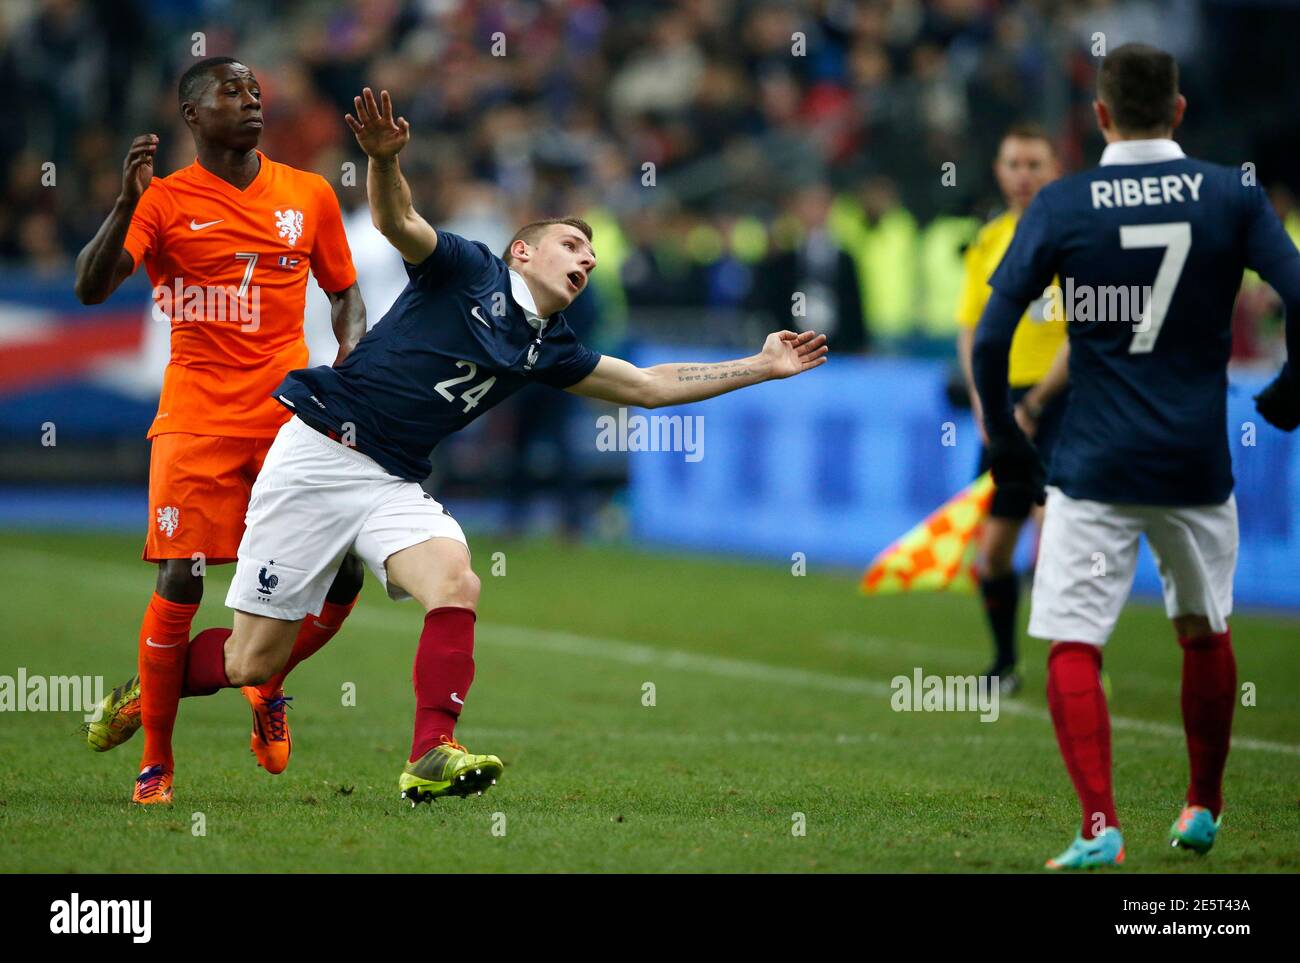 Quincy Promes (L) des pays-Bas défie Lucas digne (C) de France lors de leur  match international de football amical au Stade de France à Saint-Denis  près de Paris, le 5 mars 2014.